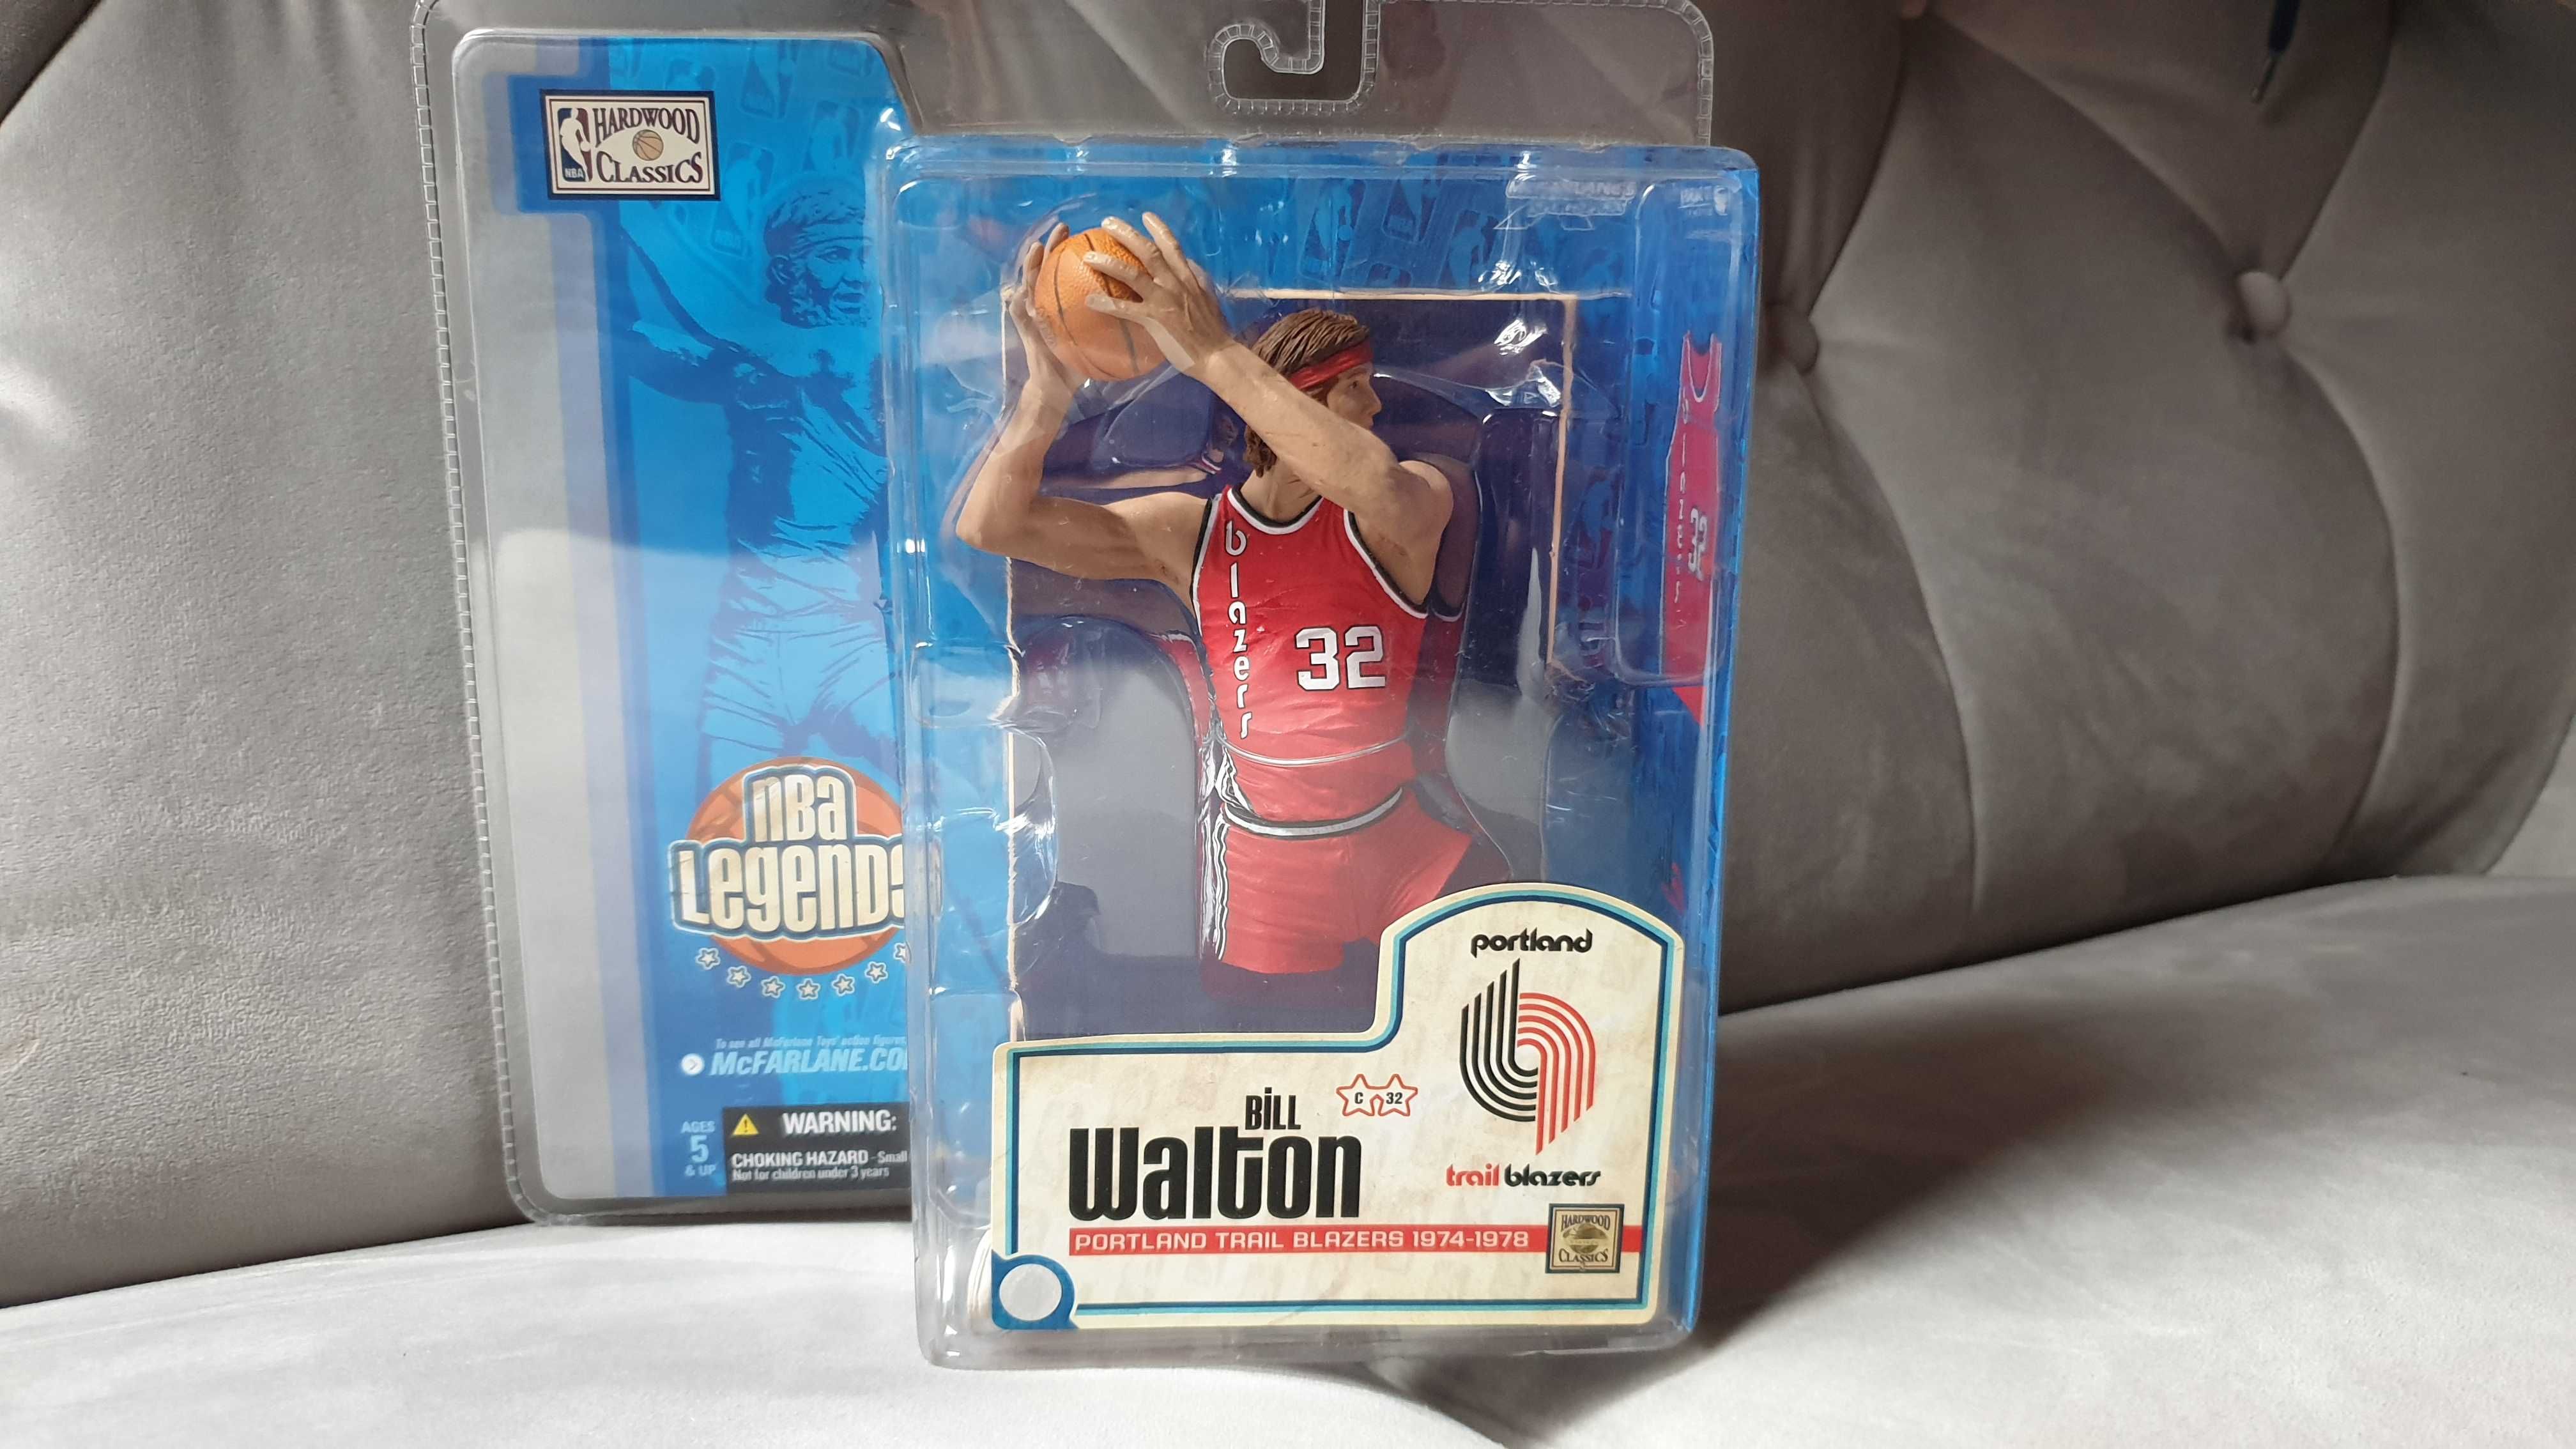 Extra Figurka NBA Legends McFarlane Bill Walton PORTLAND TRAIL BLAZERS